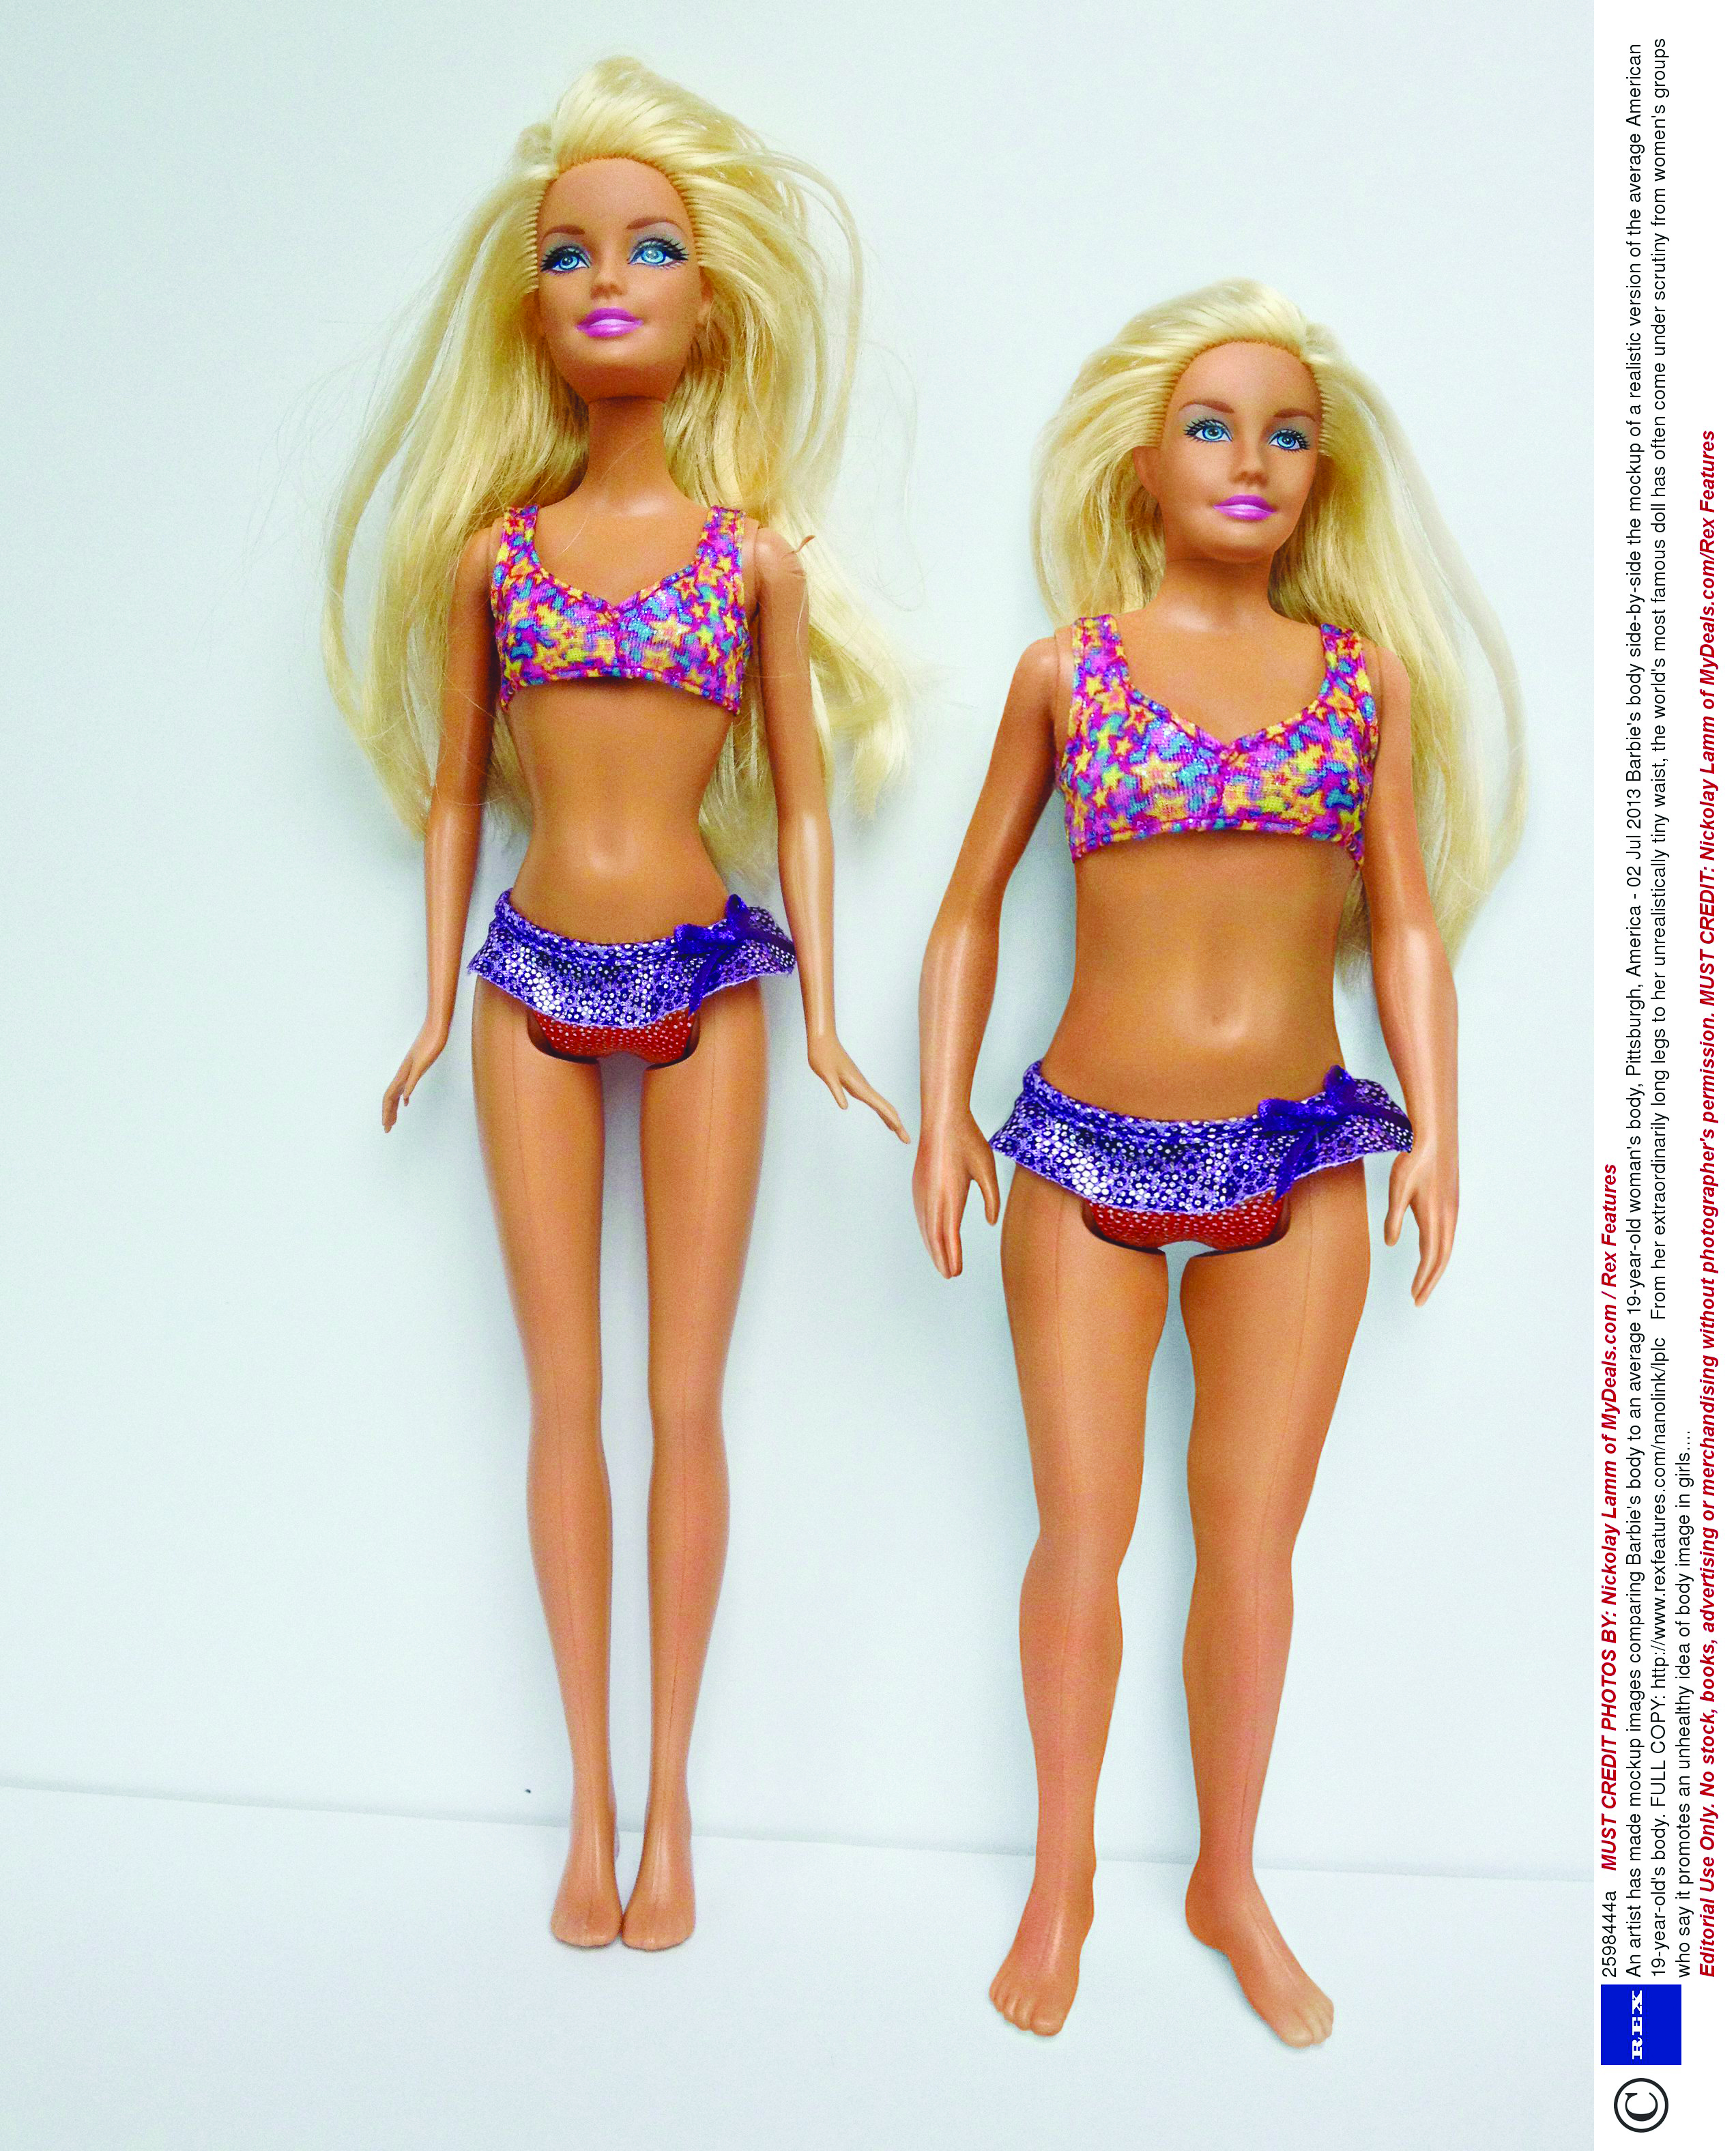 Barbie ressemble enfin à une personne normale